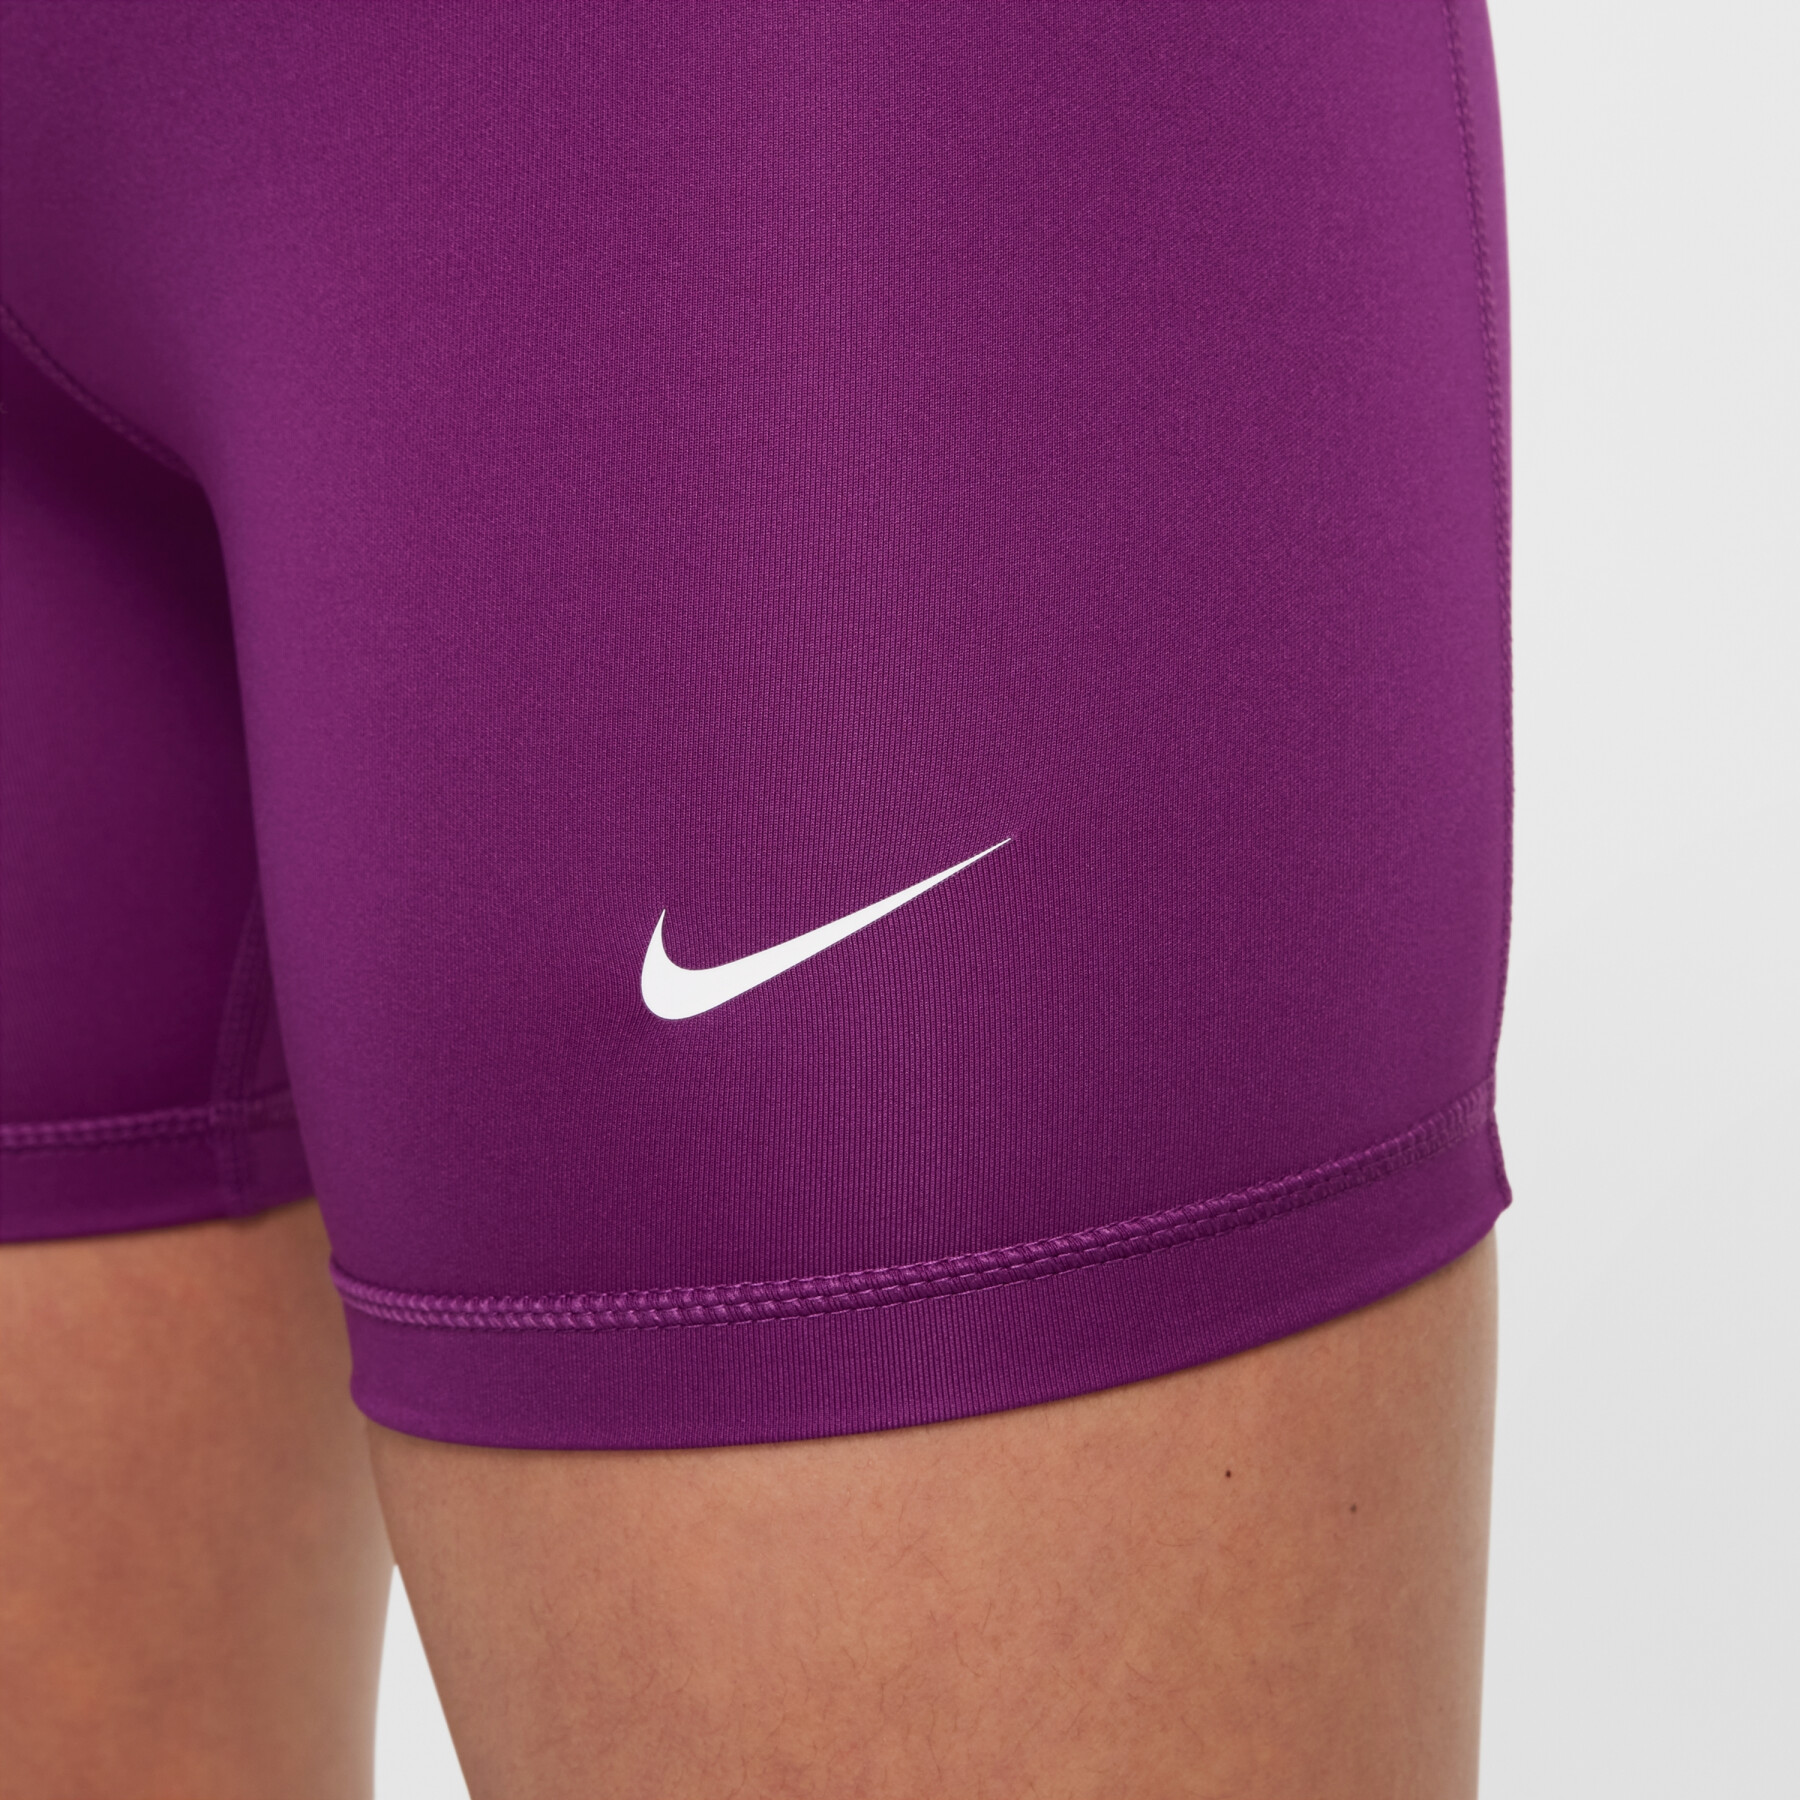 Children's shorts Nike Pro